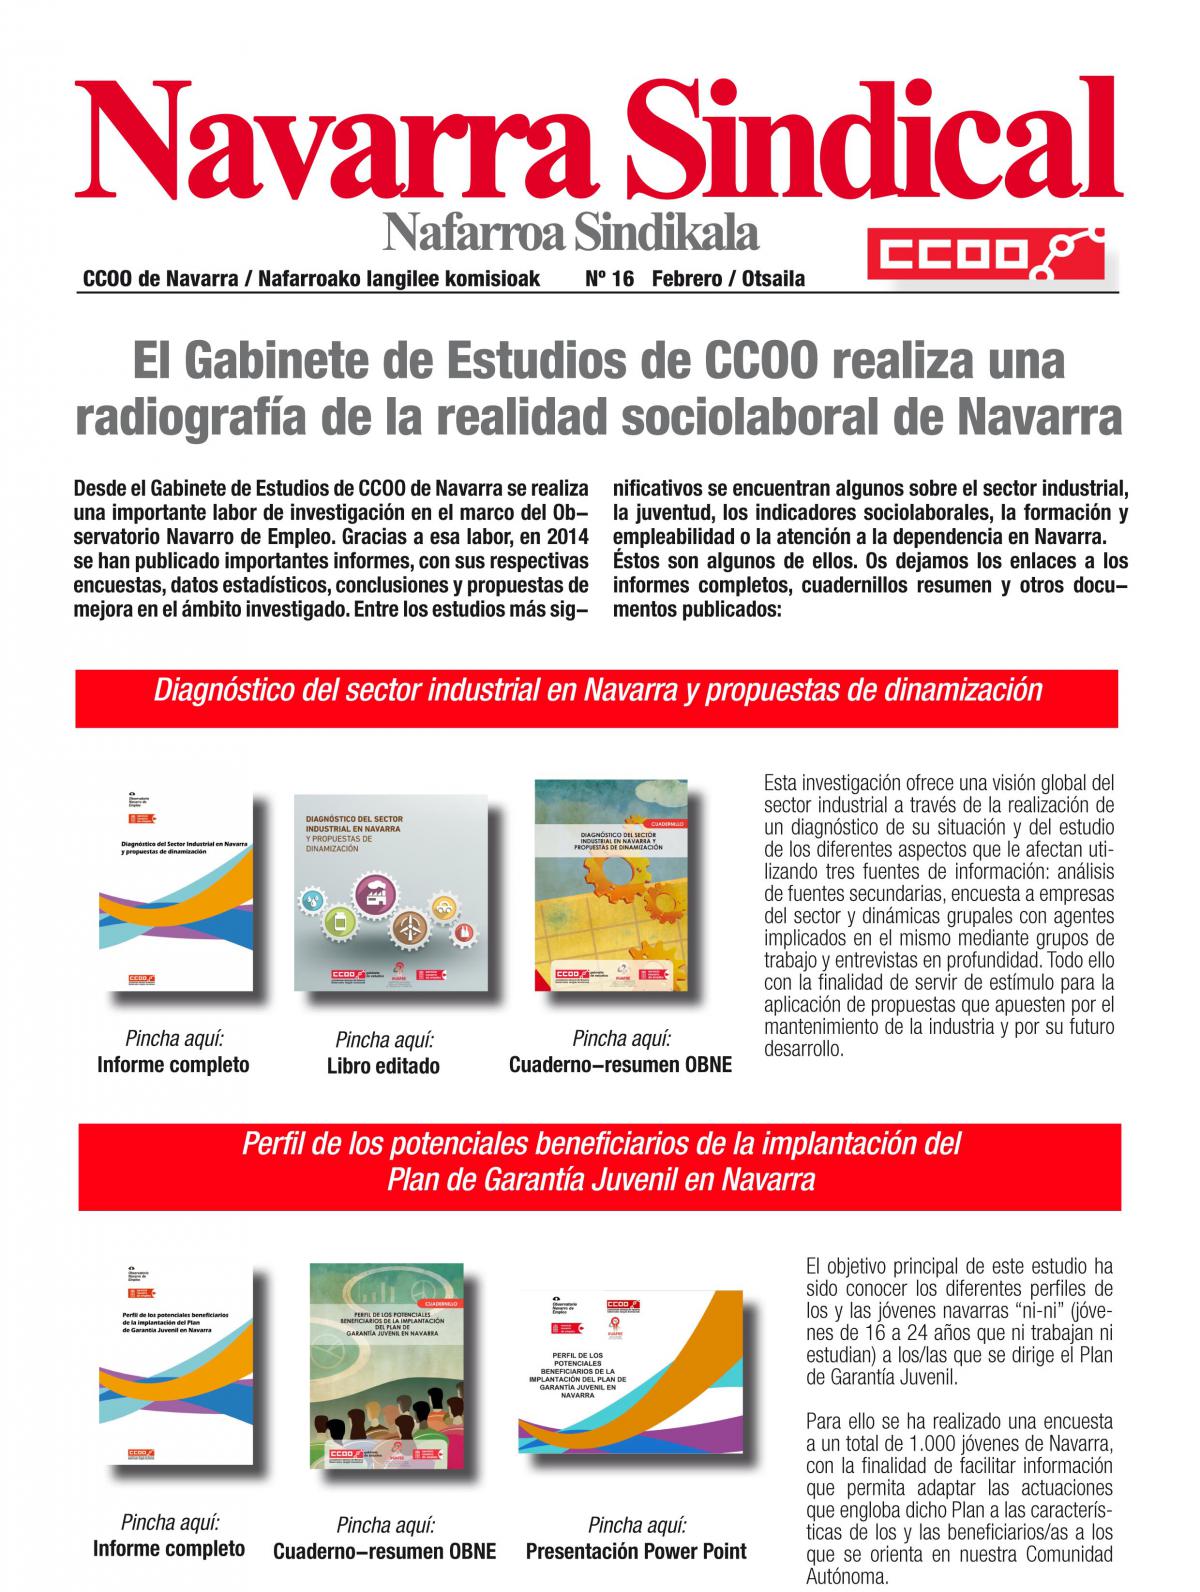 El Gabinete de Estudios de CCOO realiza una radiografía de la realidad sociolaboral de Navarra